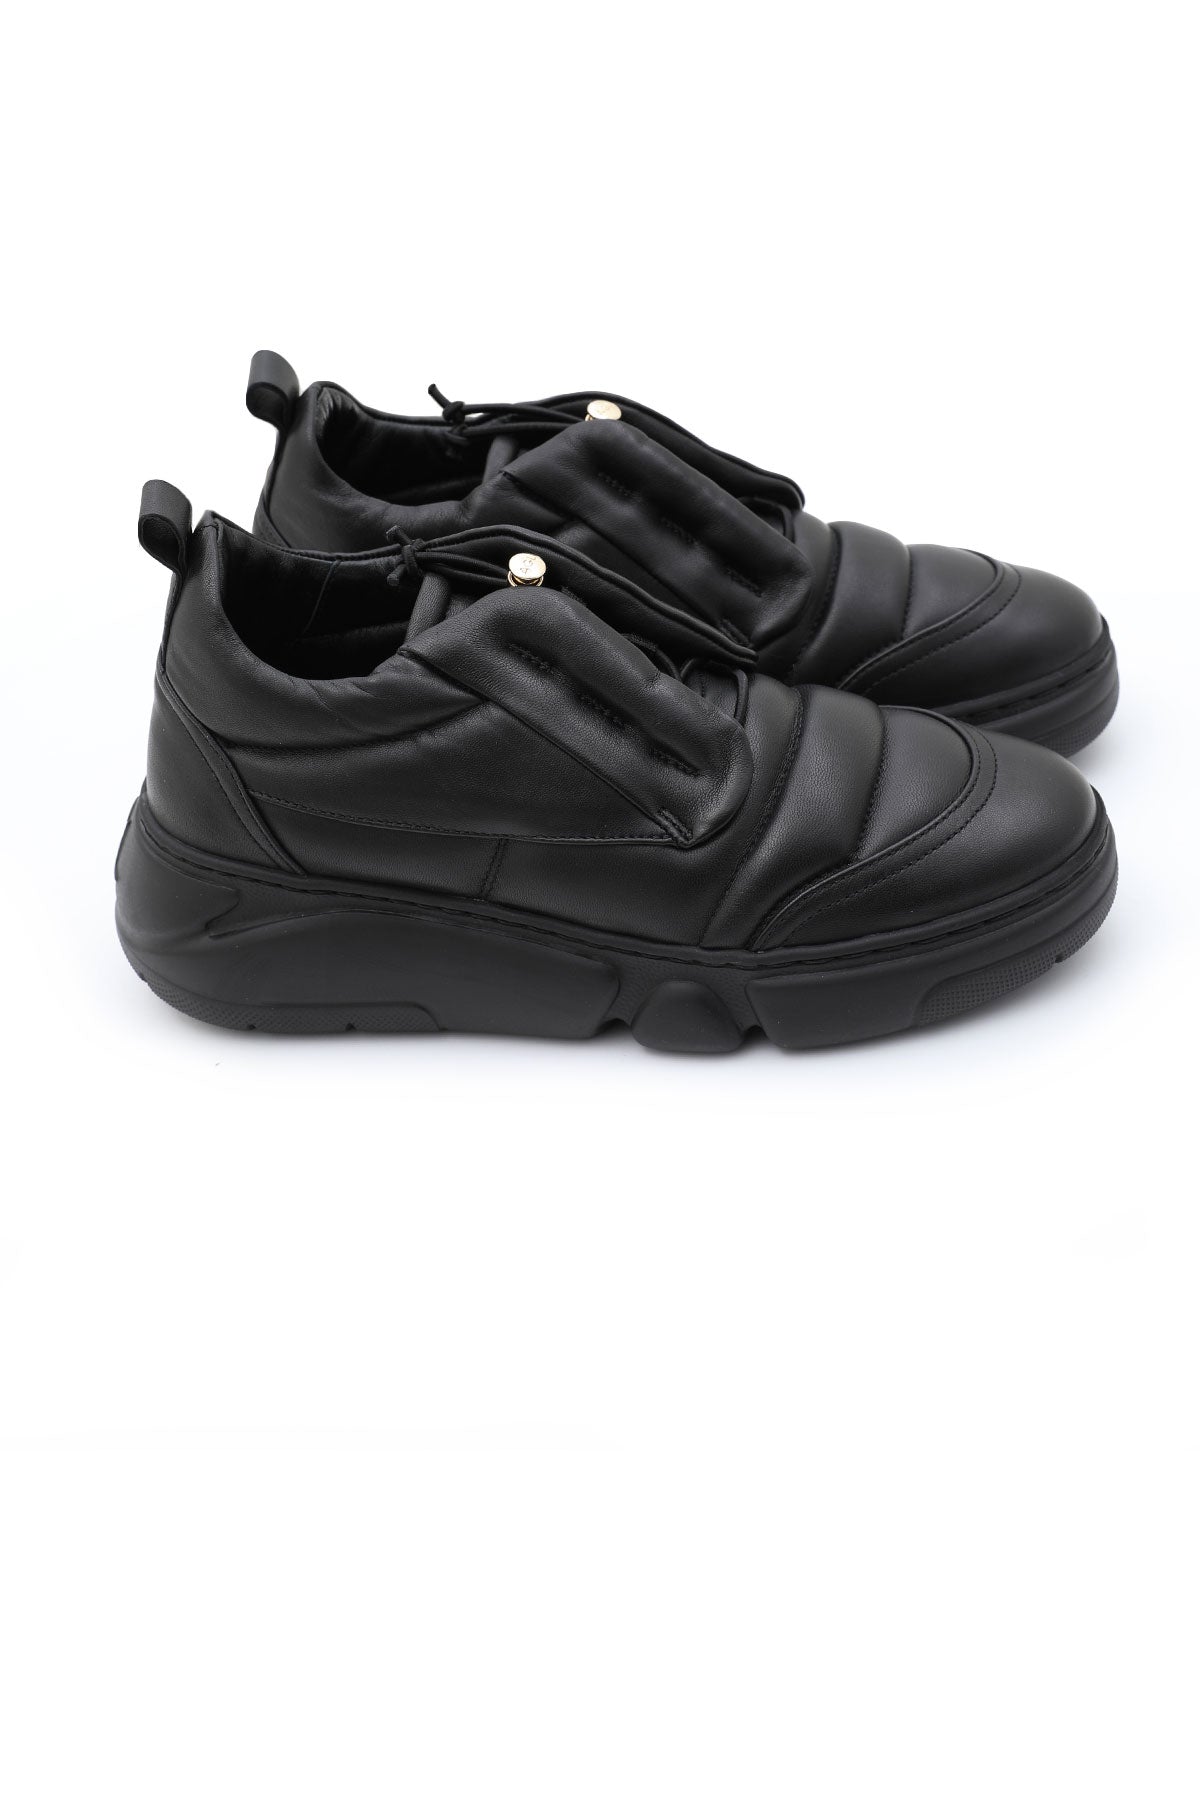 Agl Sneaker Ayakkabı-Libas Trendy Fashion Store